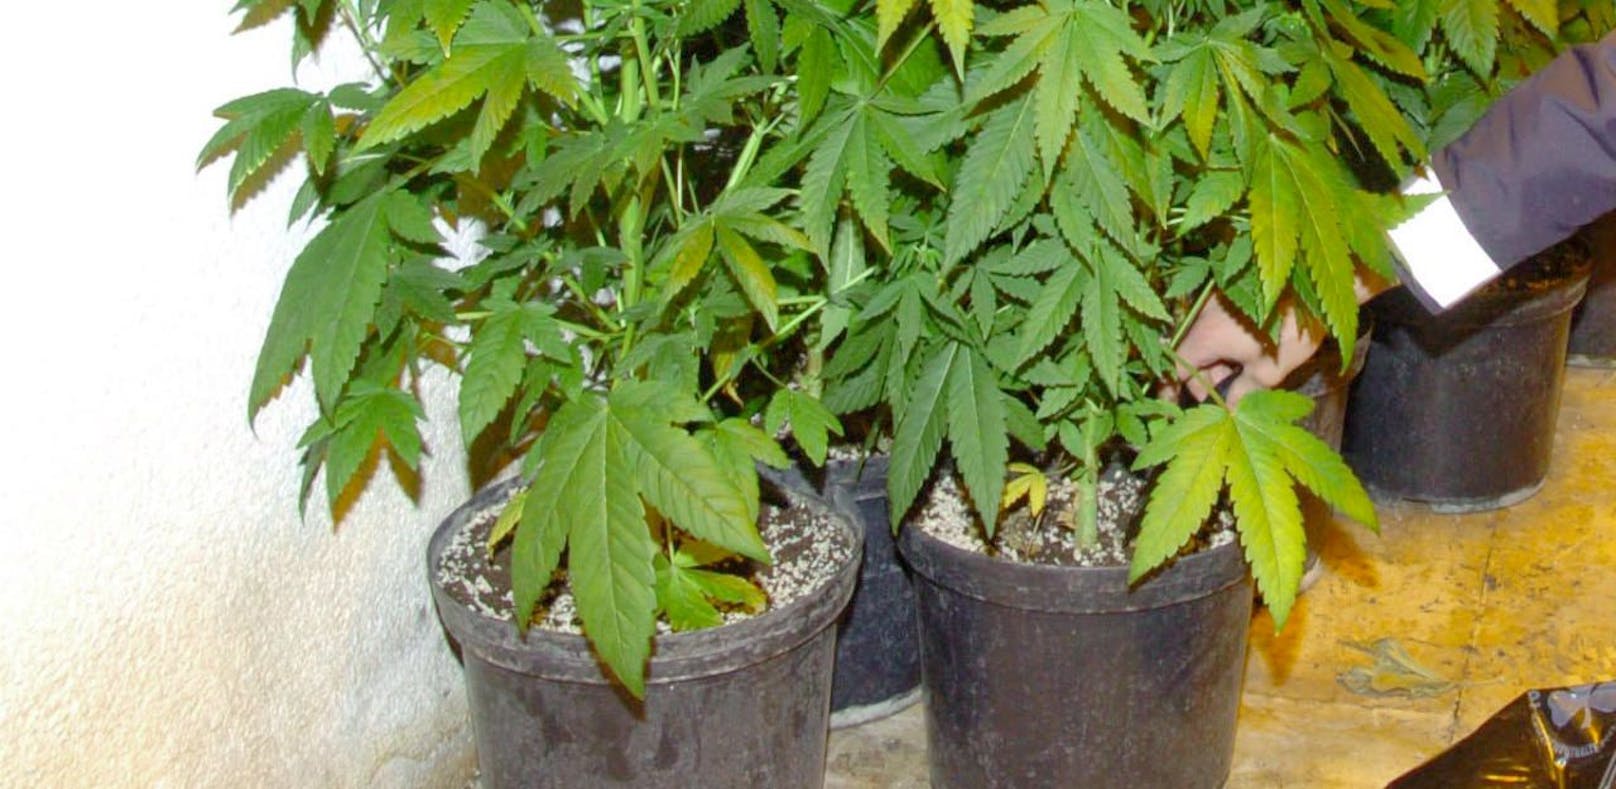 Cannabisplantage in Wohnung aufgeflogen.